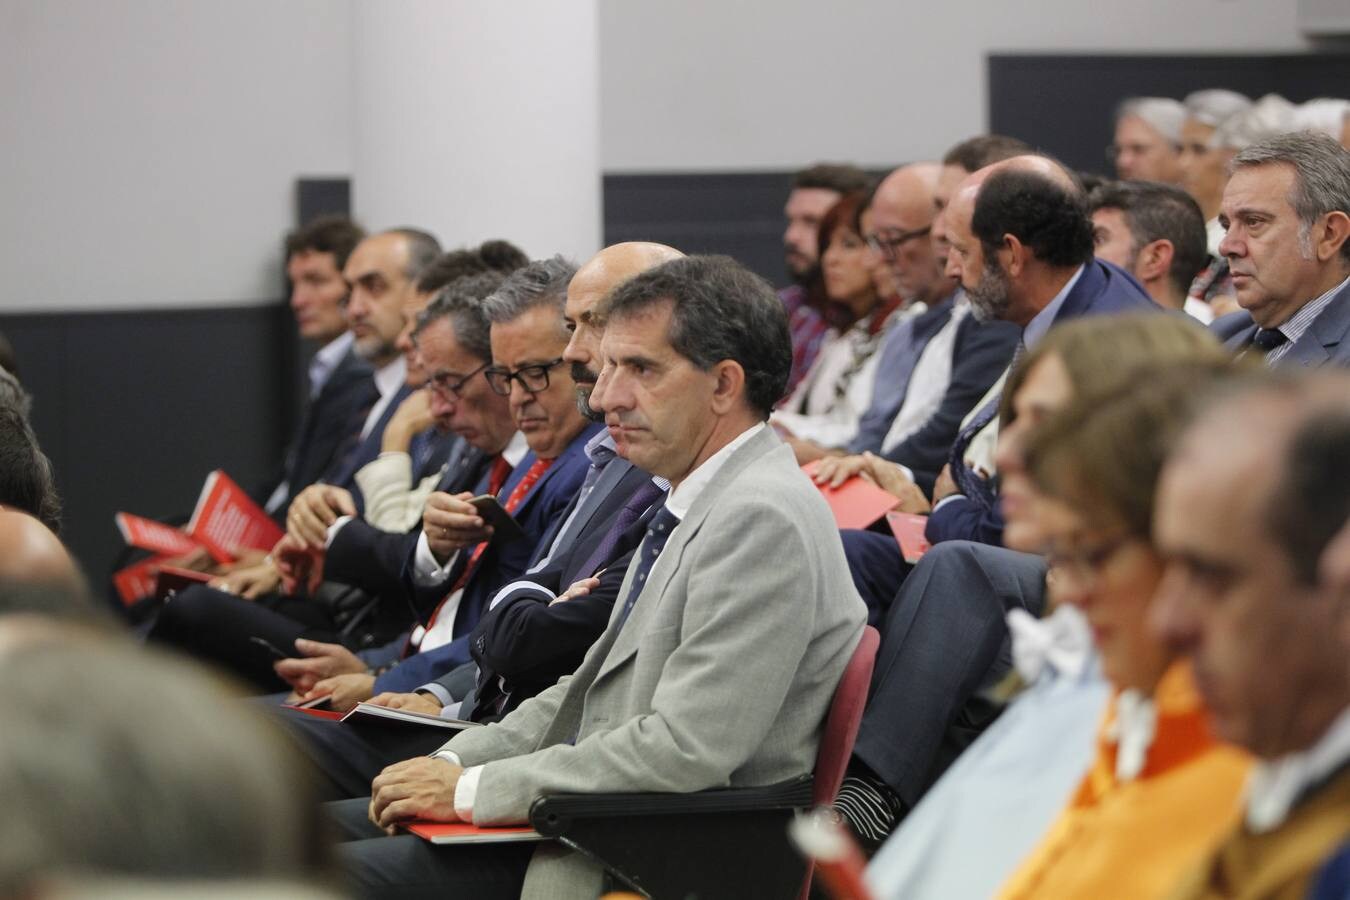 El rector de la Universidad de La Rioja (UR), Julio Rubio, ha inaugurado este lunes de forma oficial el curso 2018-2019 aunque está a dos días de someterse a una cuestión de confianza en el claustro, que podría determinar su salida de este puesto.